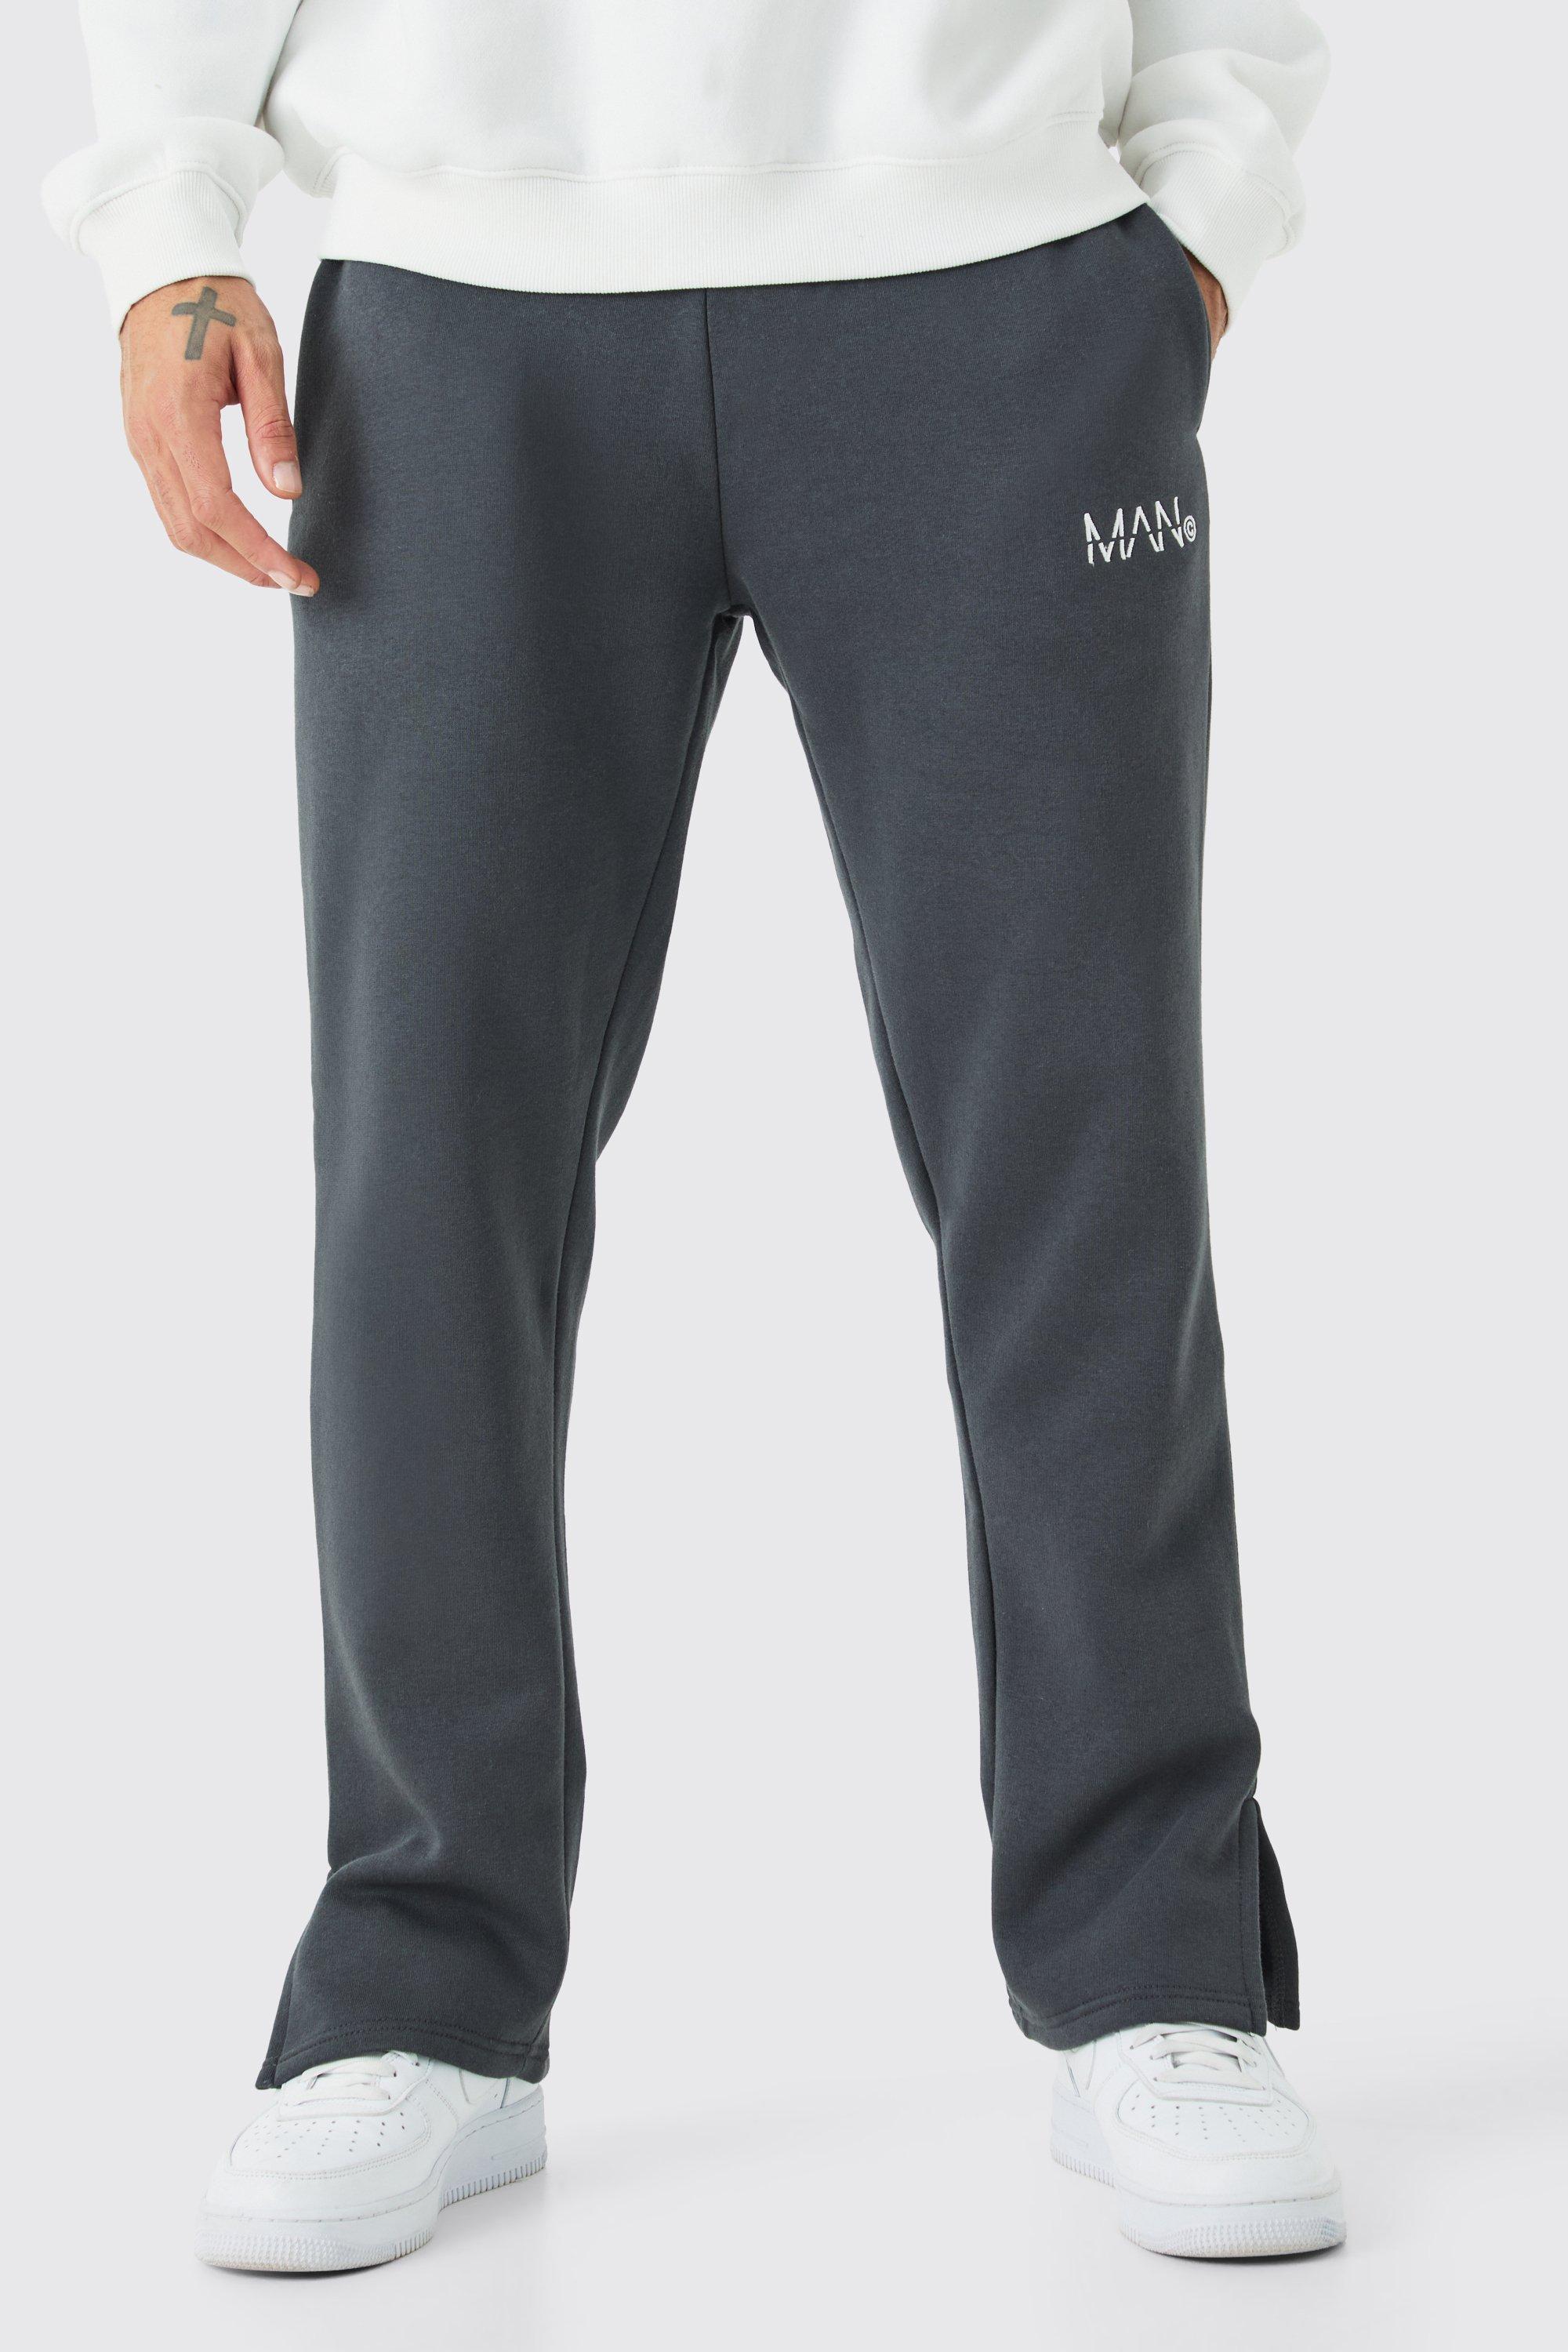 Image of Pantaloni tuta Man con spacco sul fondo, Grigio